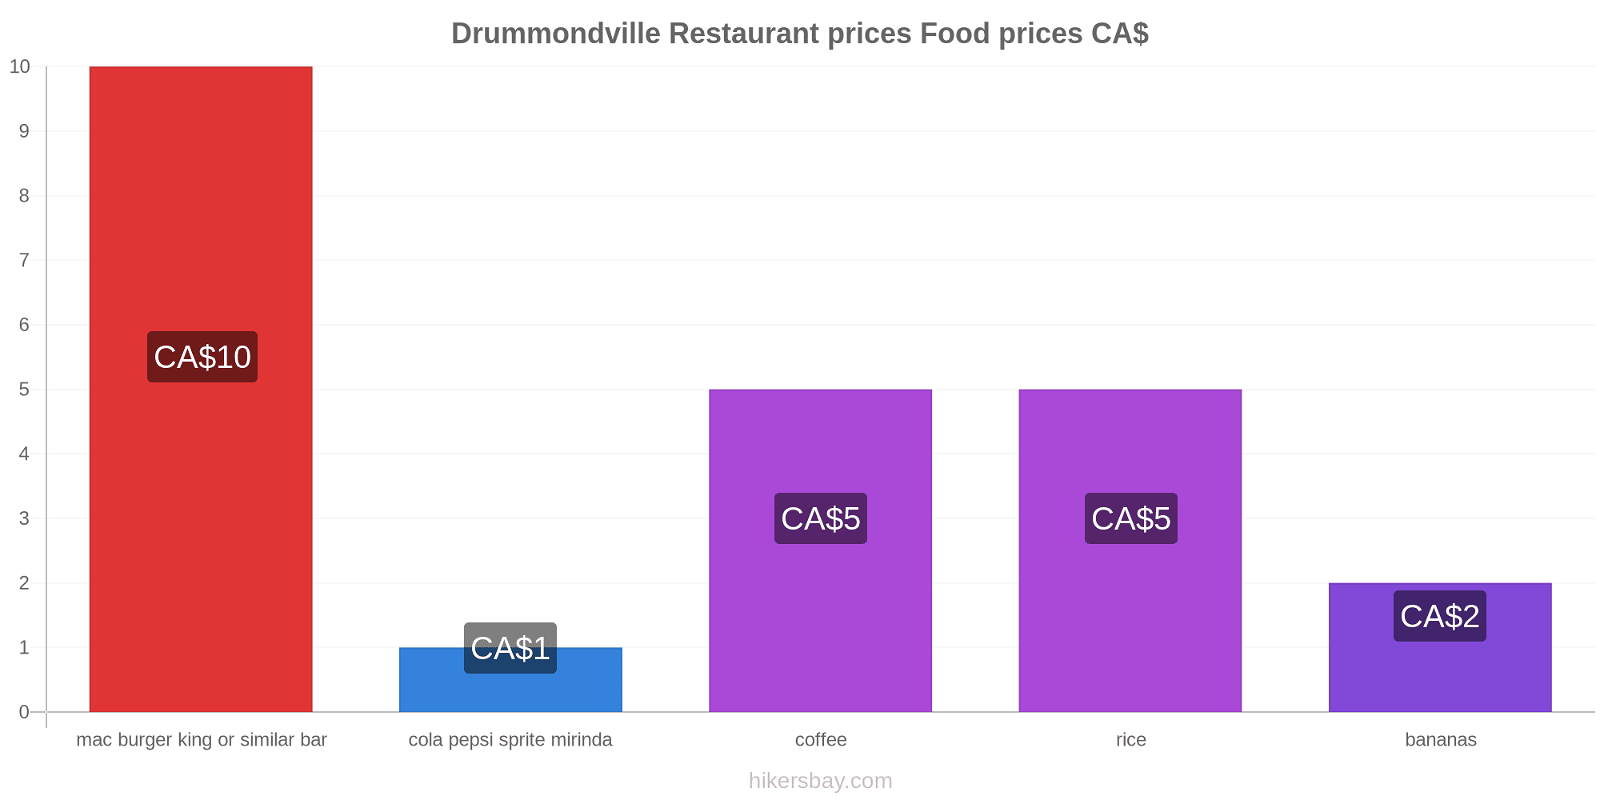 Drummondville price changes hikersbay.com